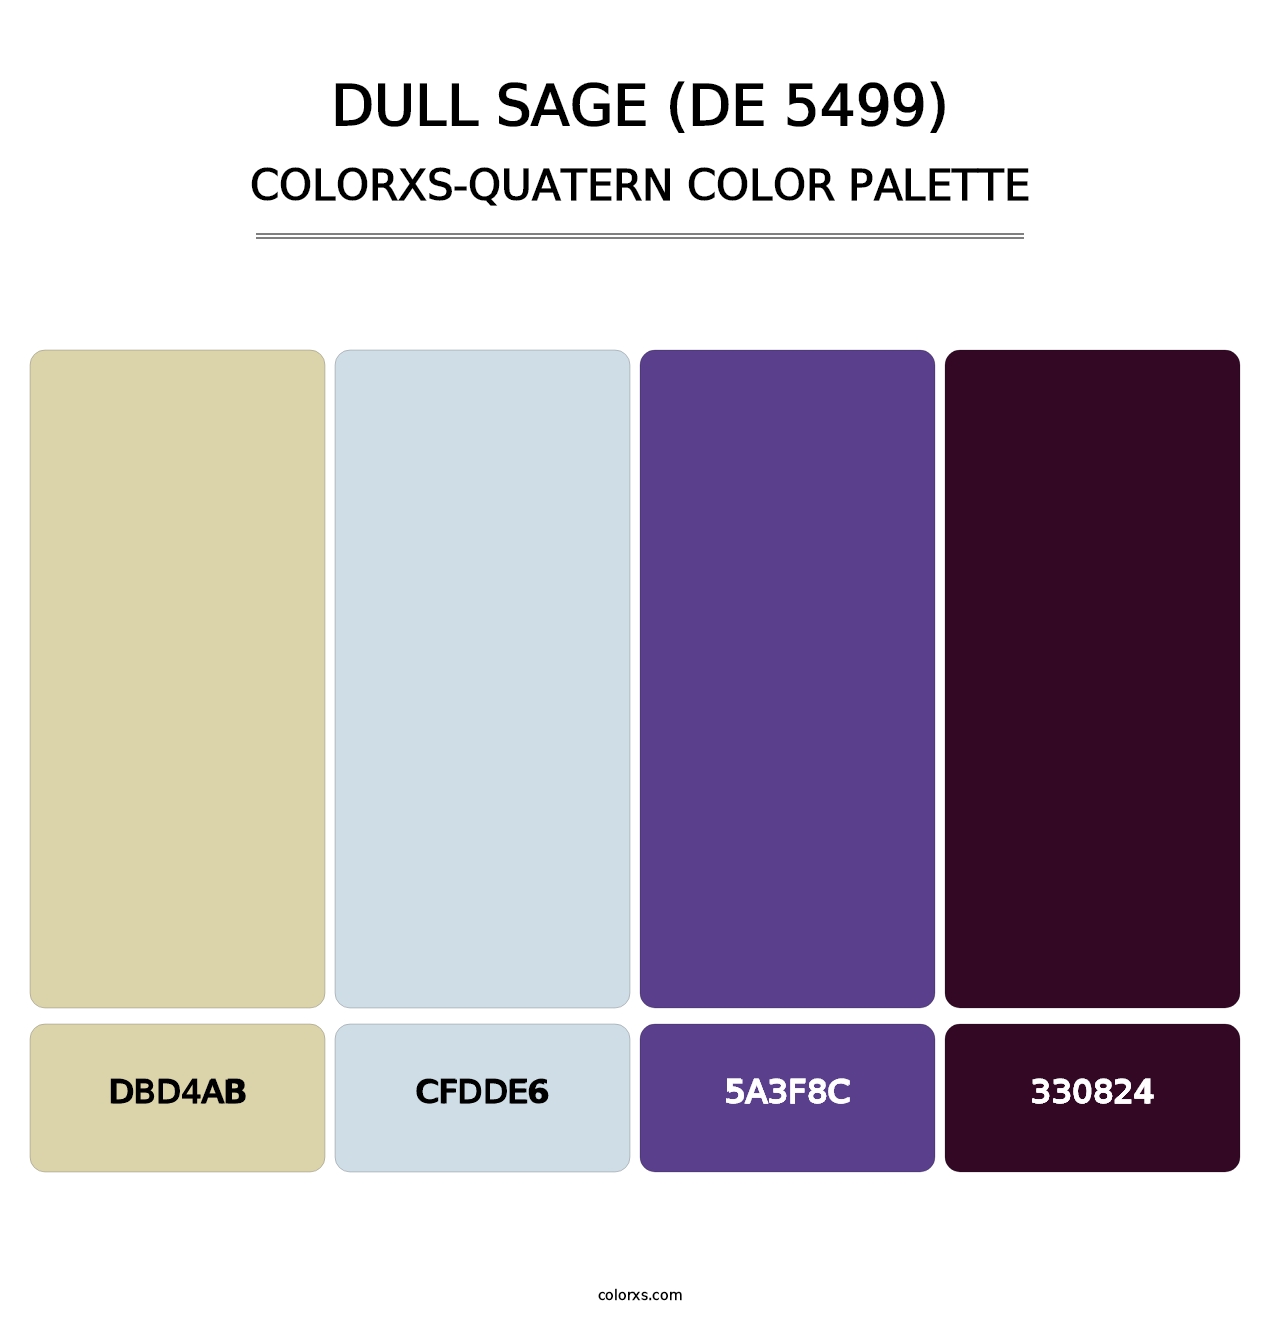 Dull Sage (DE 5499) - Colorxs Quatern Palette